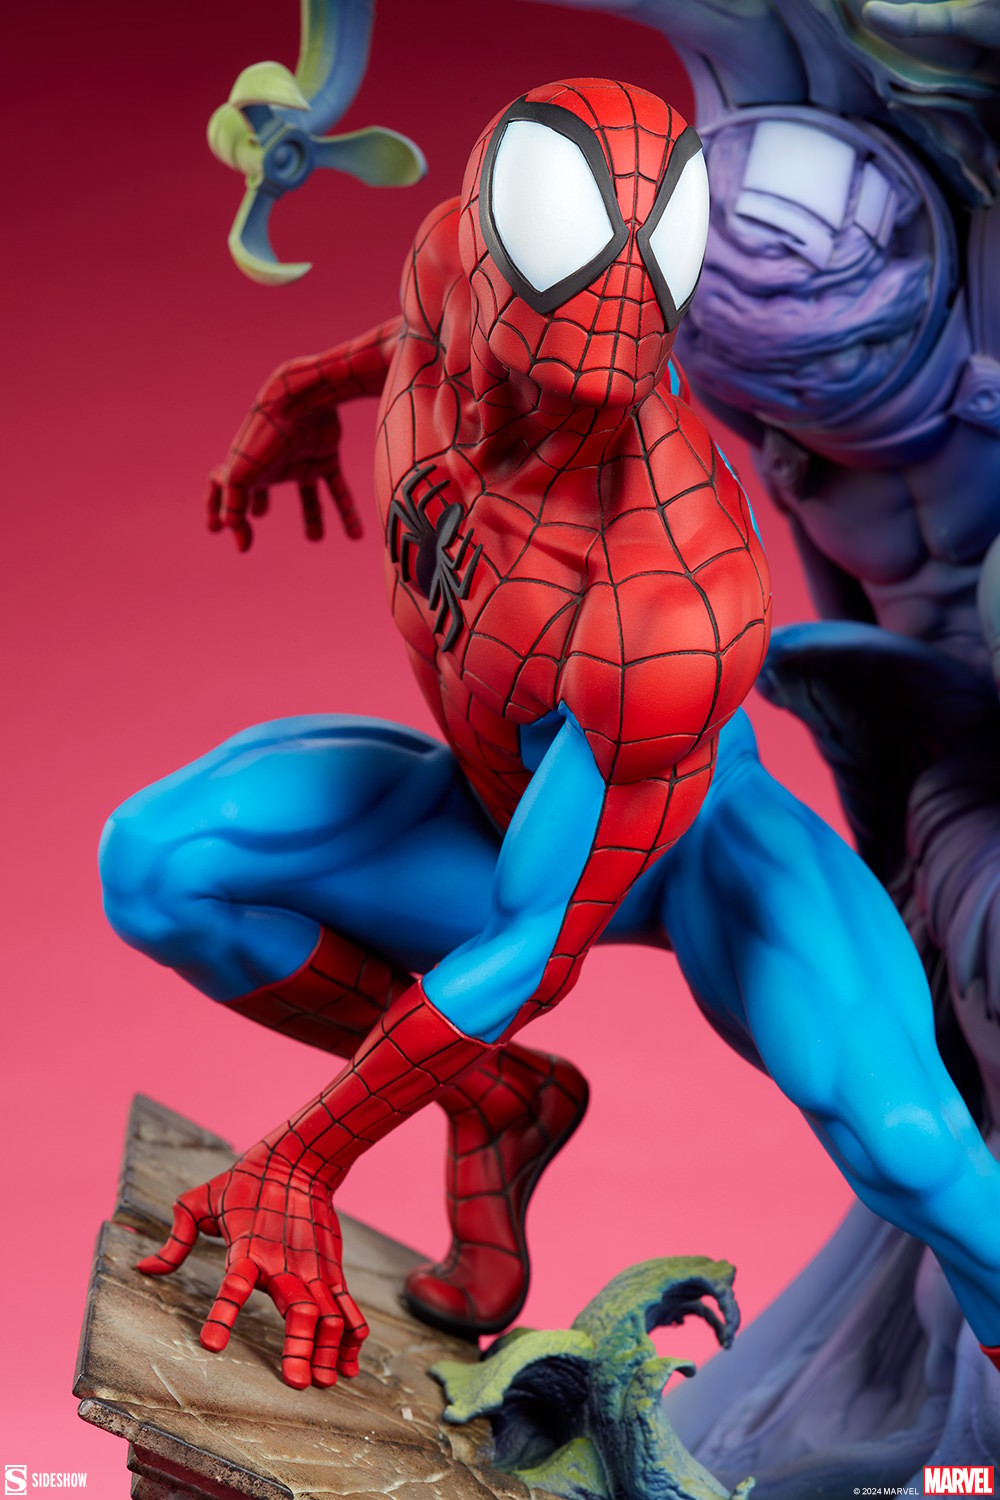 SPIDER-MAN Premium Format Figure Spider-man-premium-format-figure_marvel_gallery_65b05f3100683